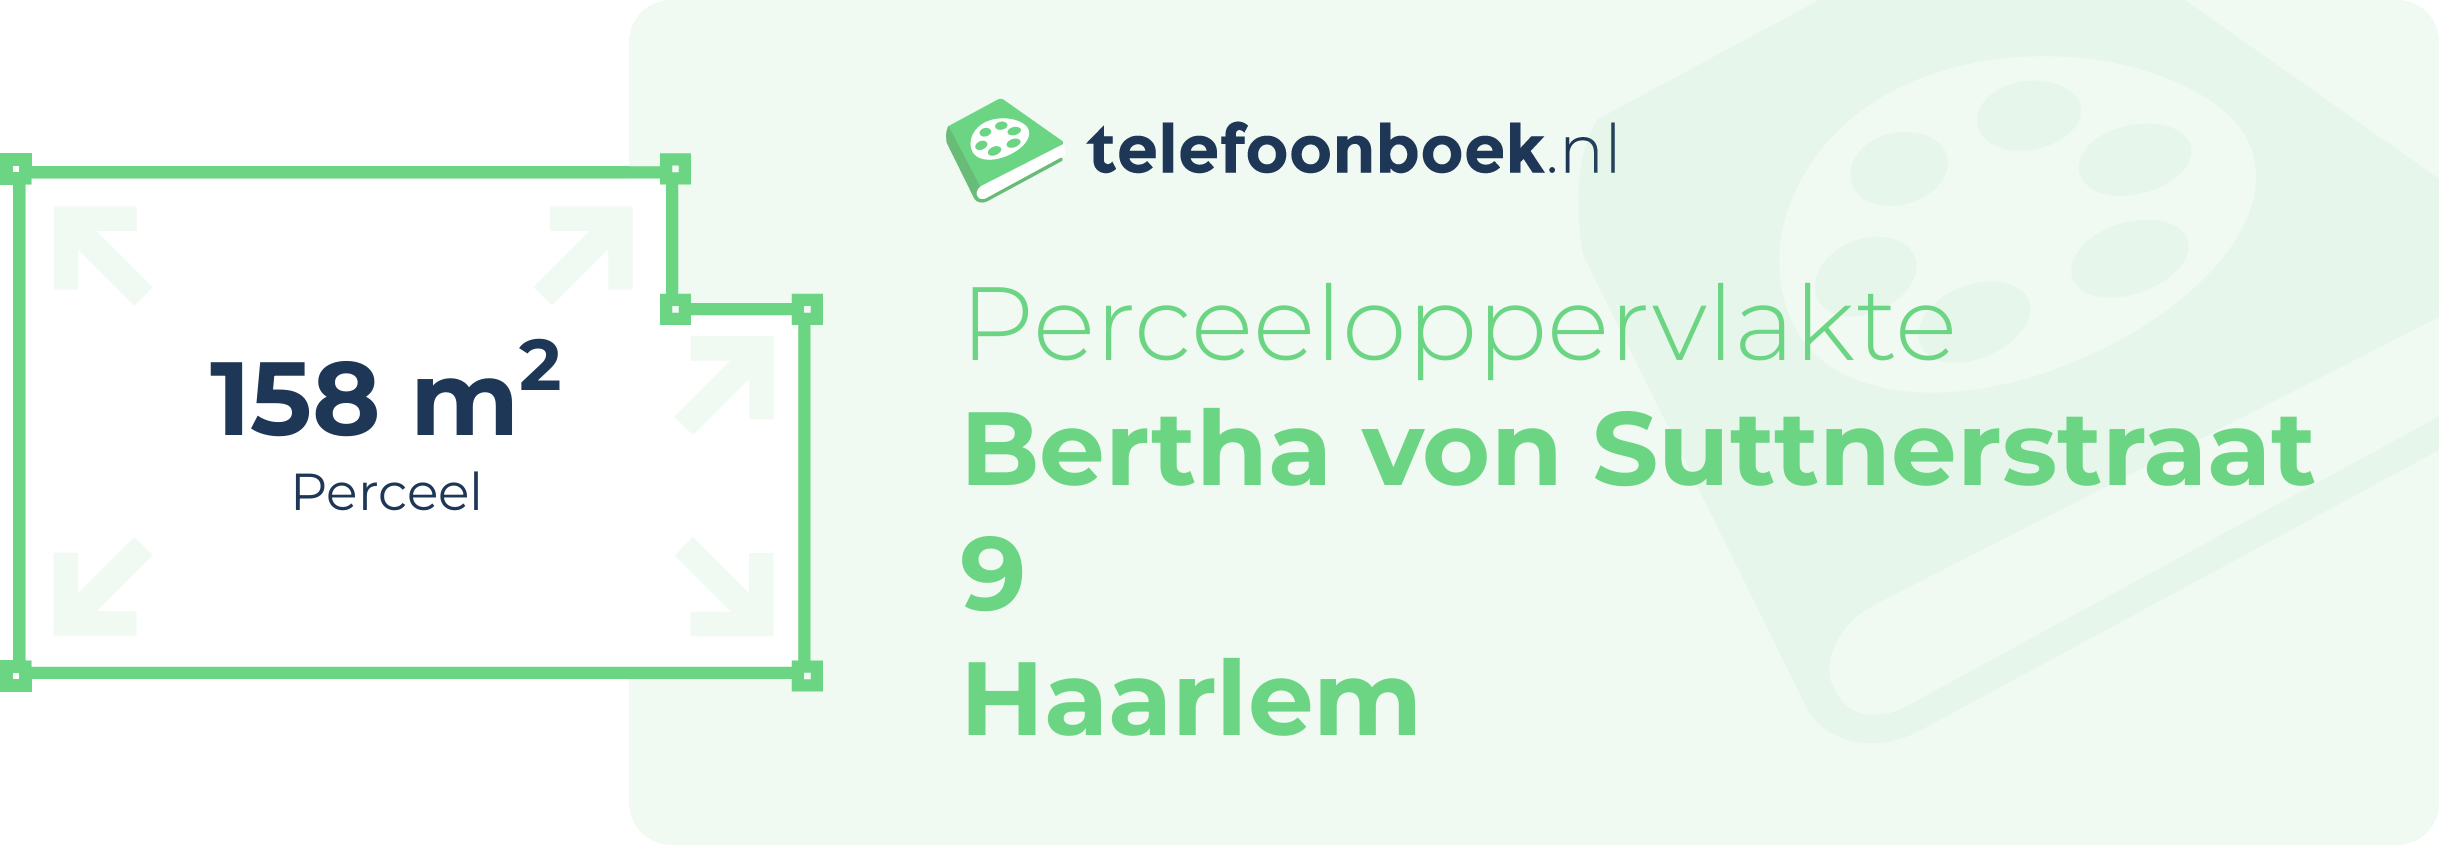 Perceeloppervlakte Bertha Von Suttnerstraat 9 Haarlem